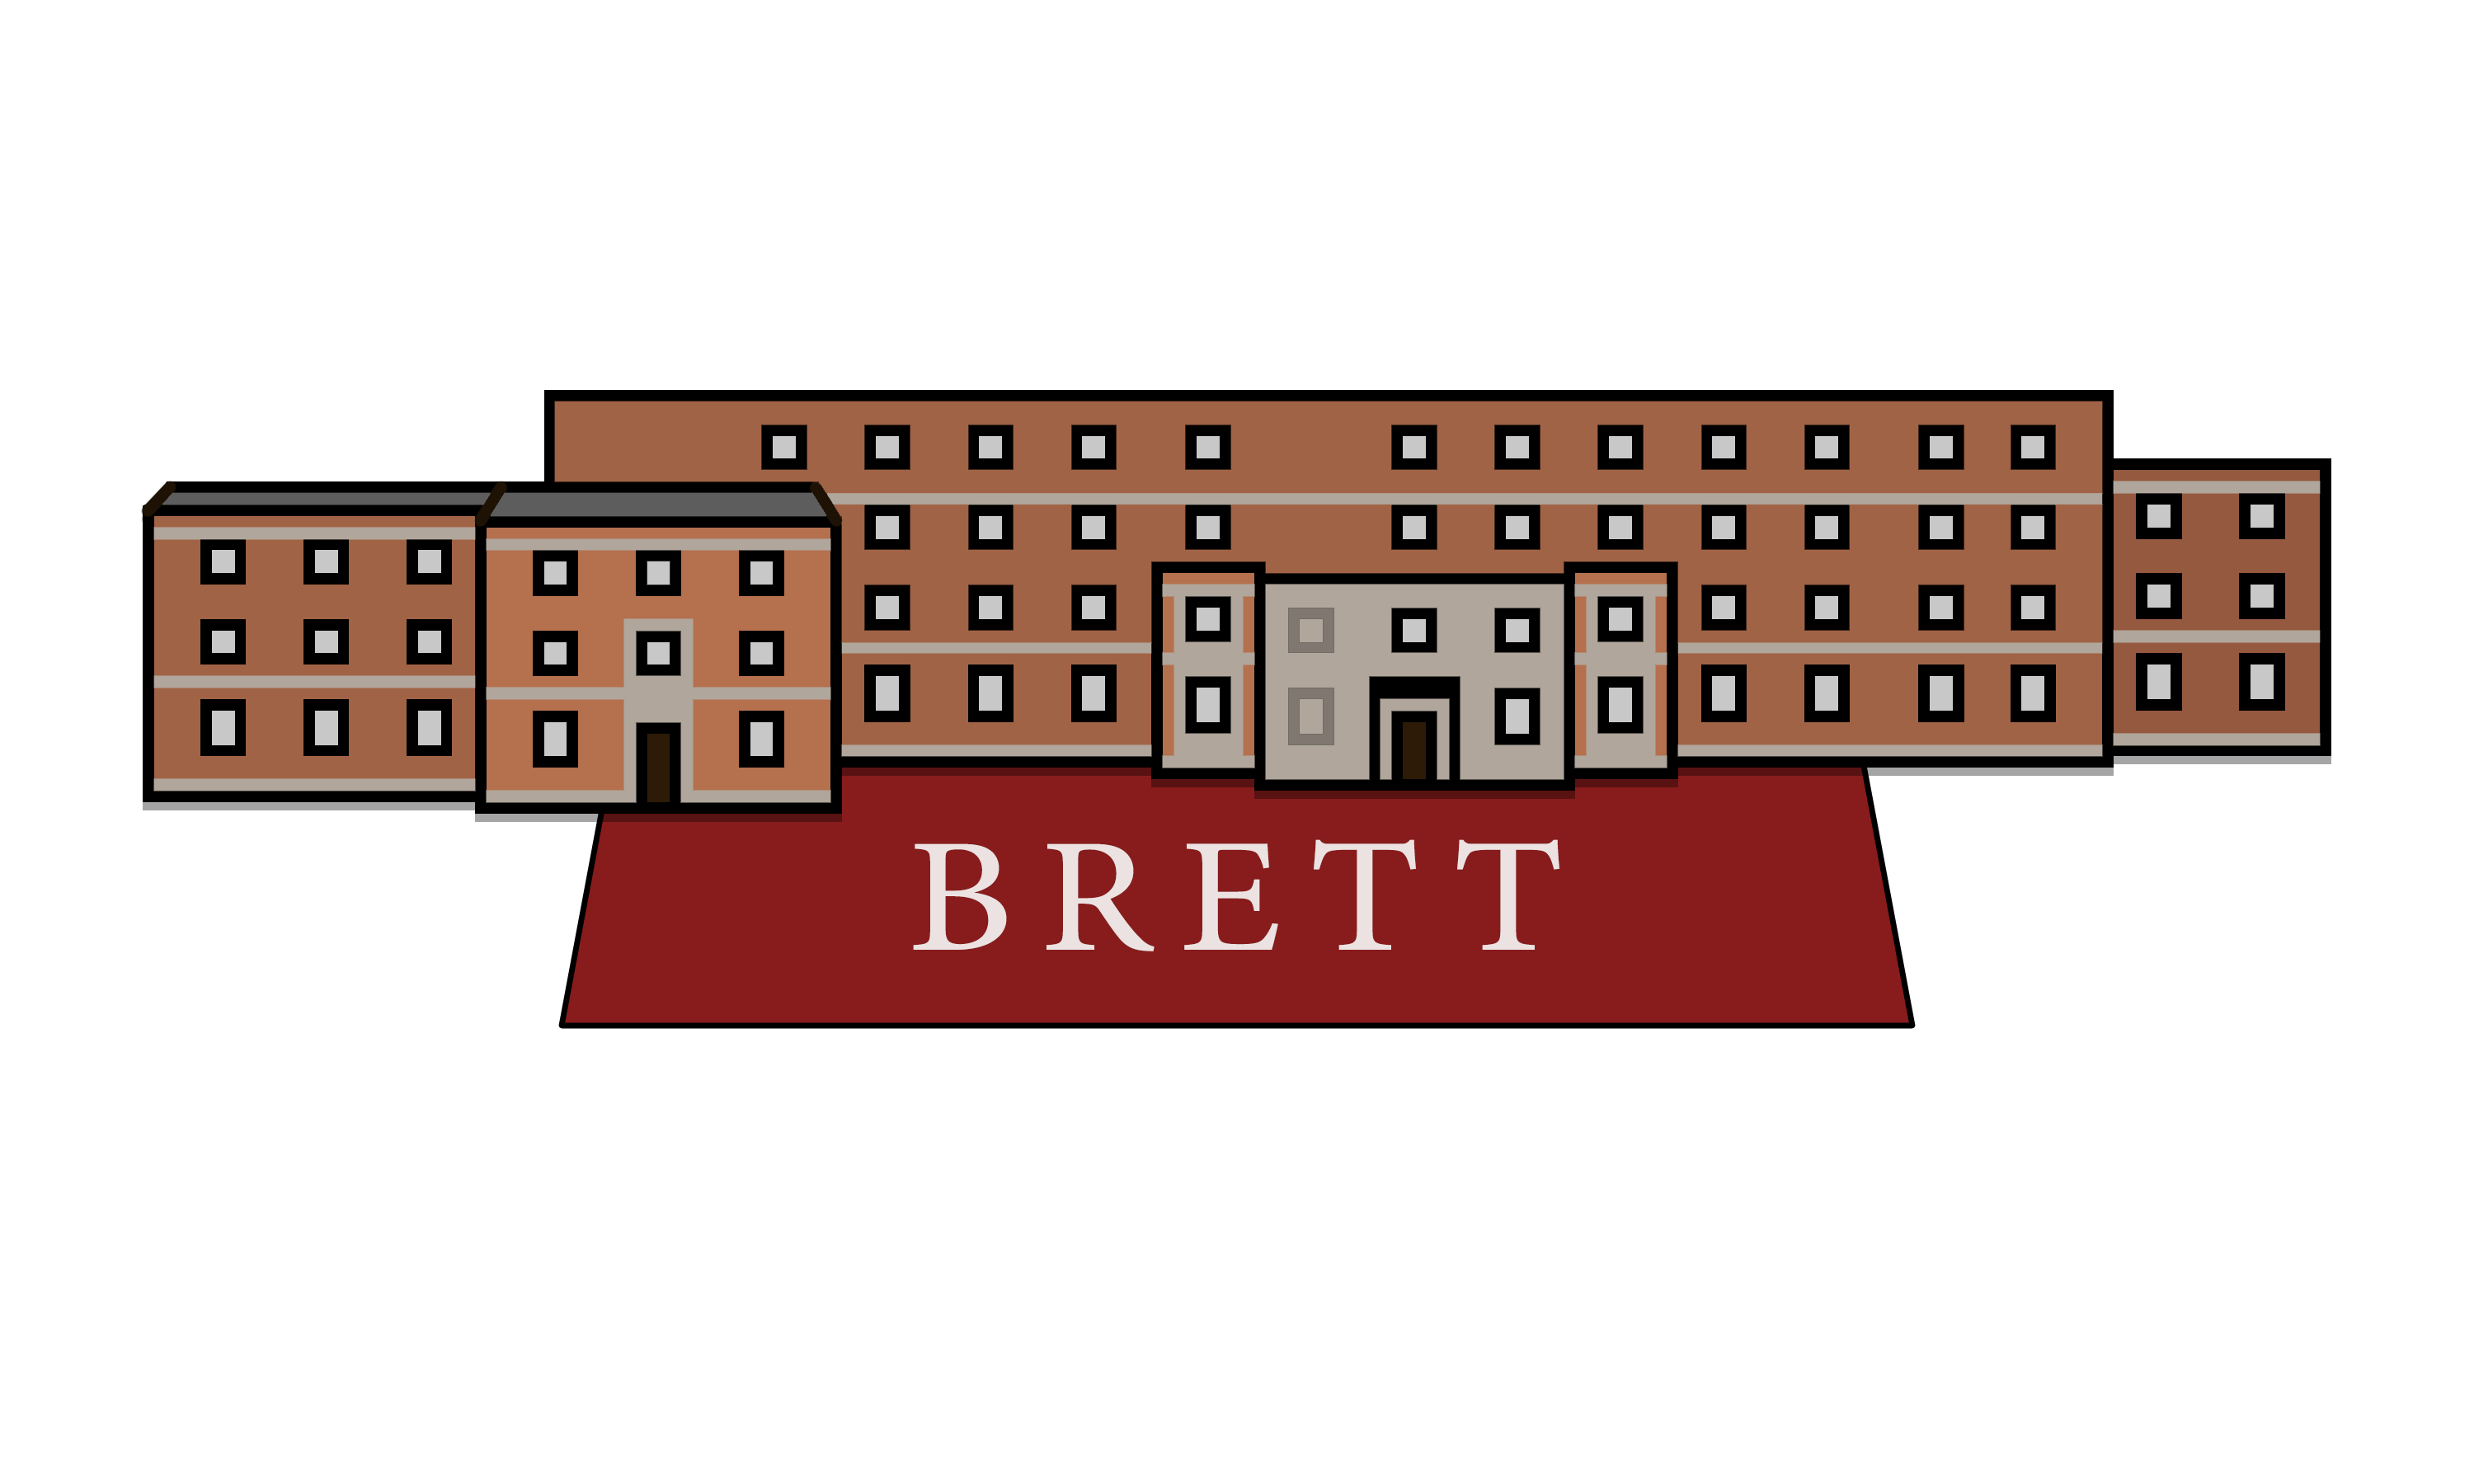 Brett House